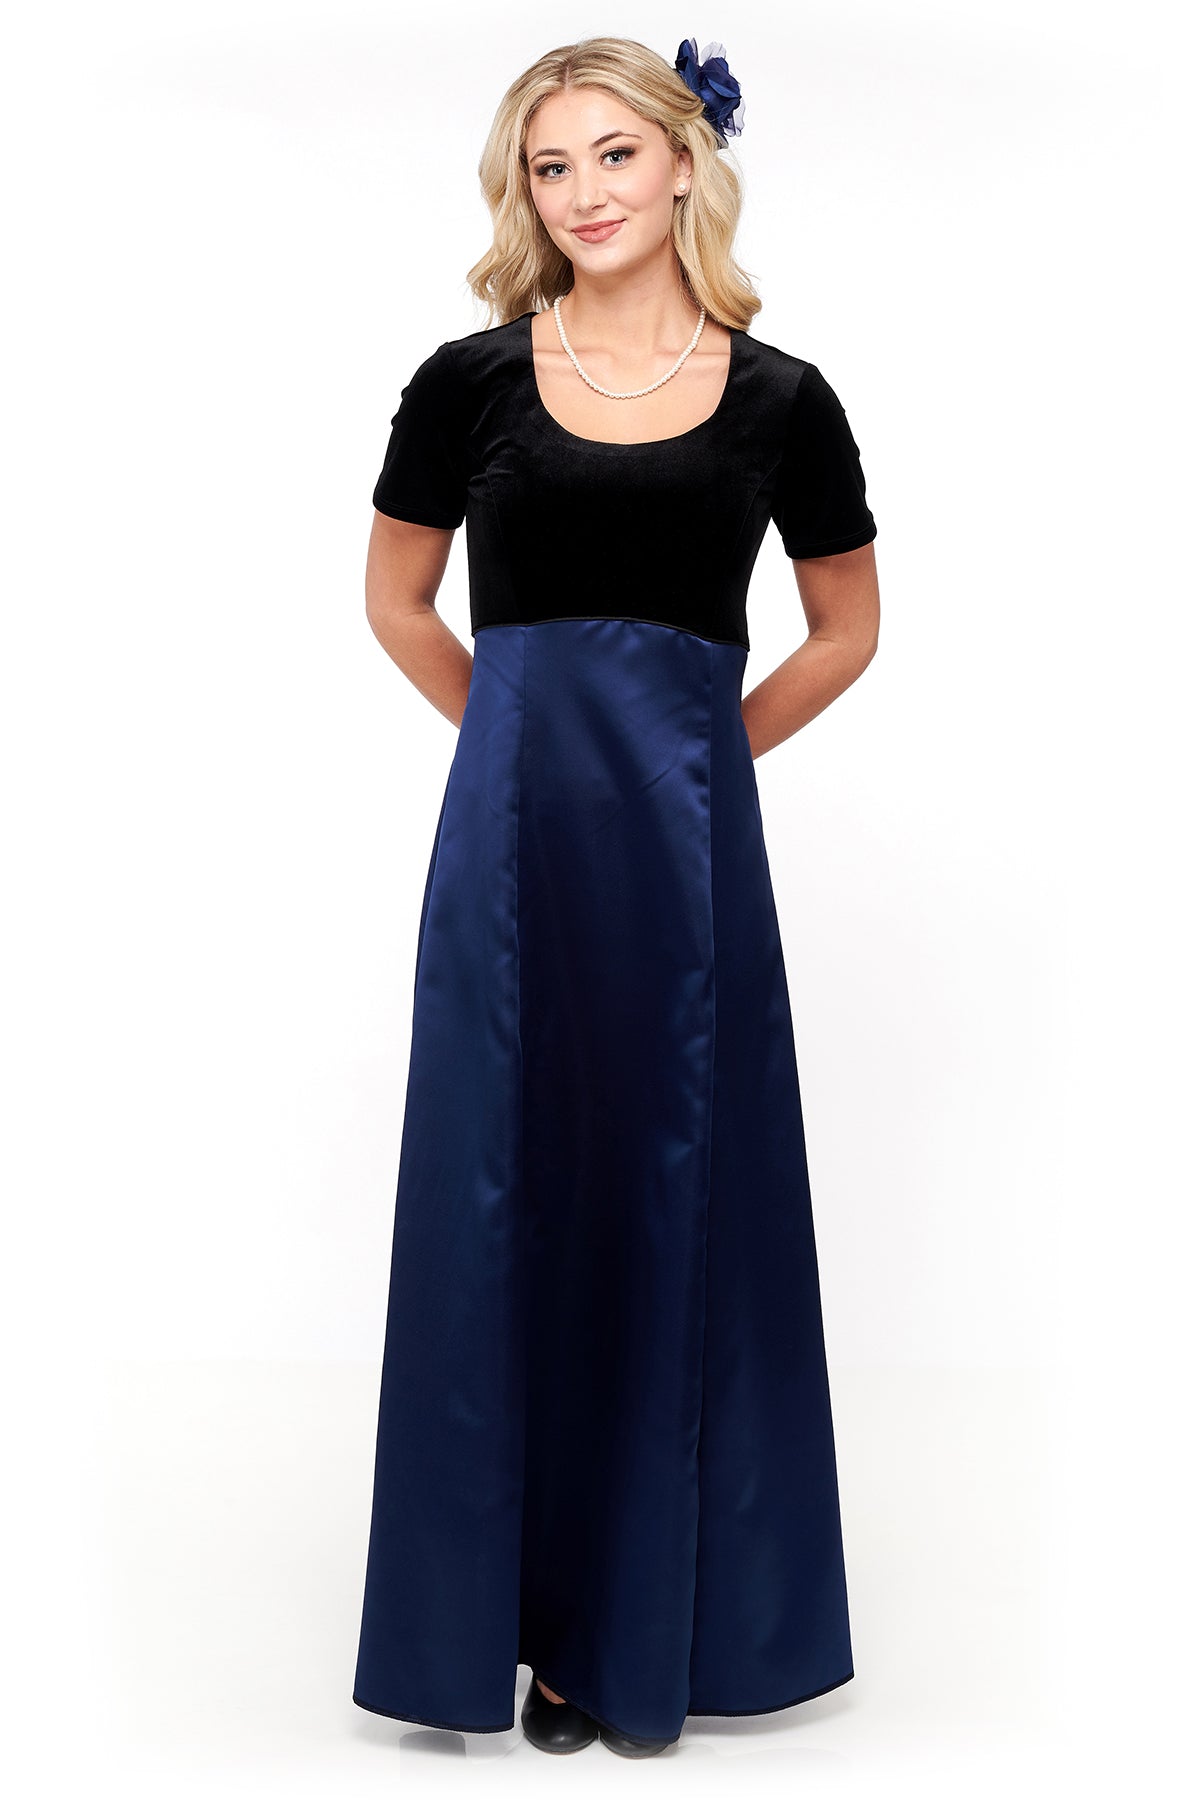 NEW! NEELA (Style #2693) - Velvet Scoop Neck, Short Sleeve Dress with Navy Skirt